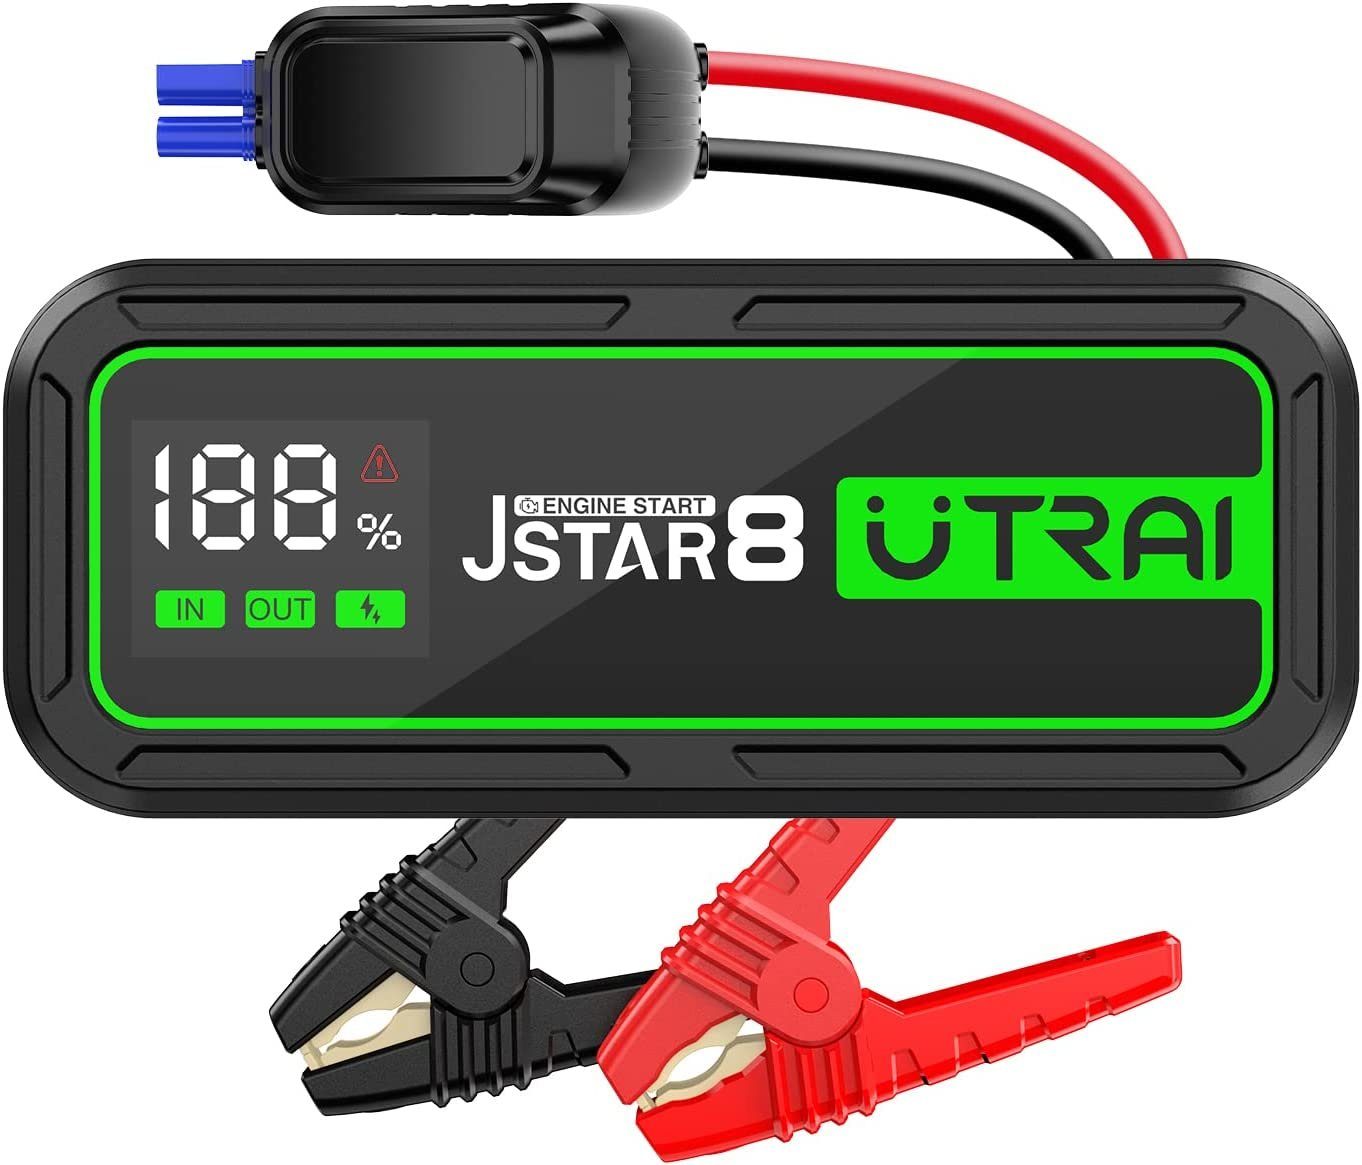 UTRAI Jstar 8 Starthilfegerät 20.000mAh mAh, 20000mah für bis Motoren Stromspitze 10L Powerbank geeignet JS8 20000 74Wh Autostarter 3000A